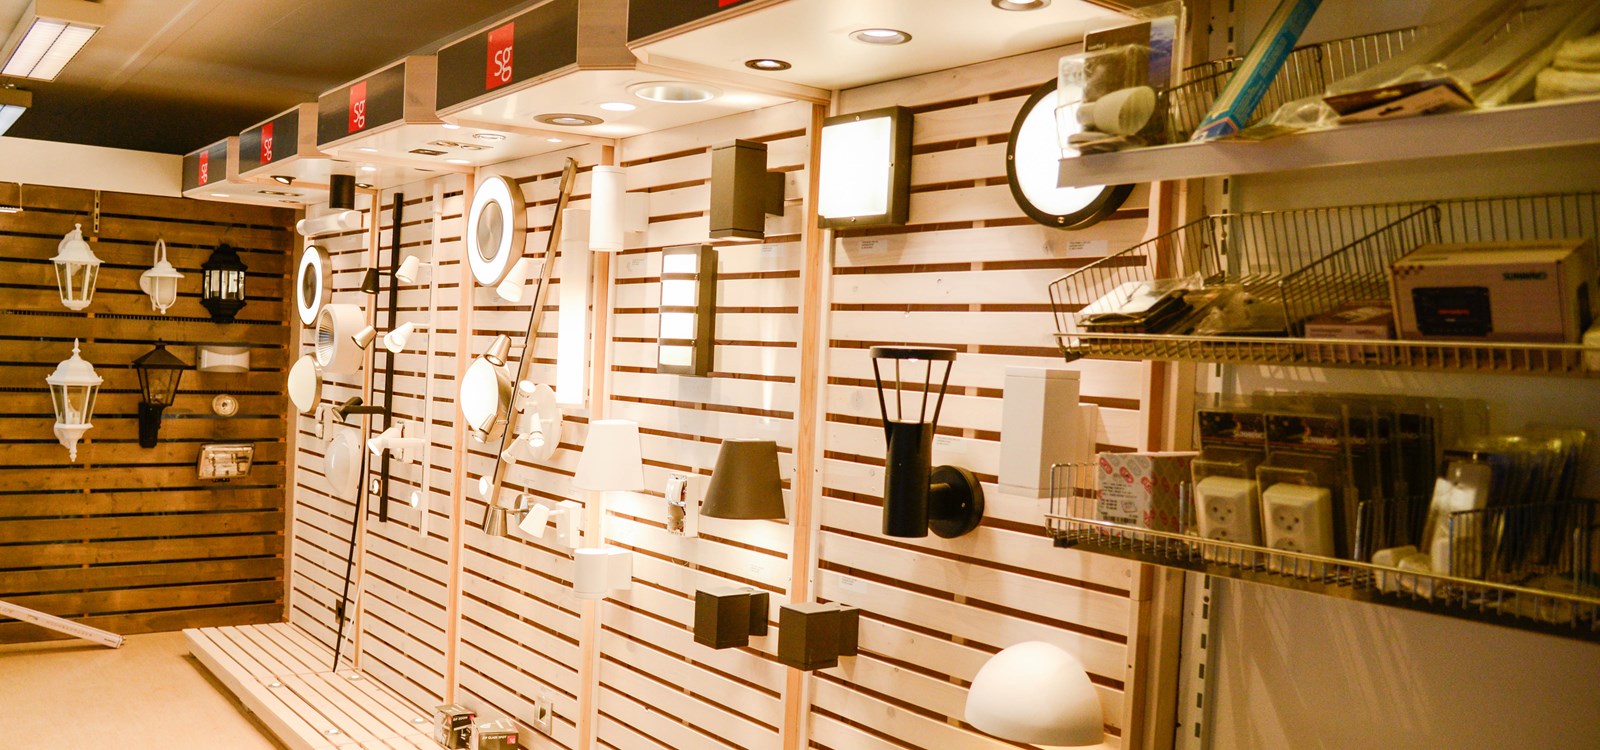 Elektrisk installasjon AS har ein stor del av butikken, fylt opp med lamper og smått og stort av elektriske artiklar.